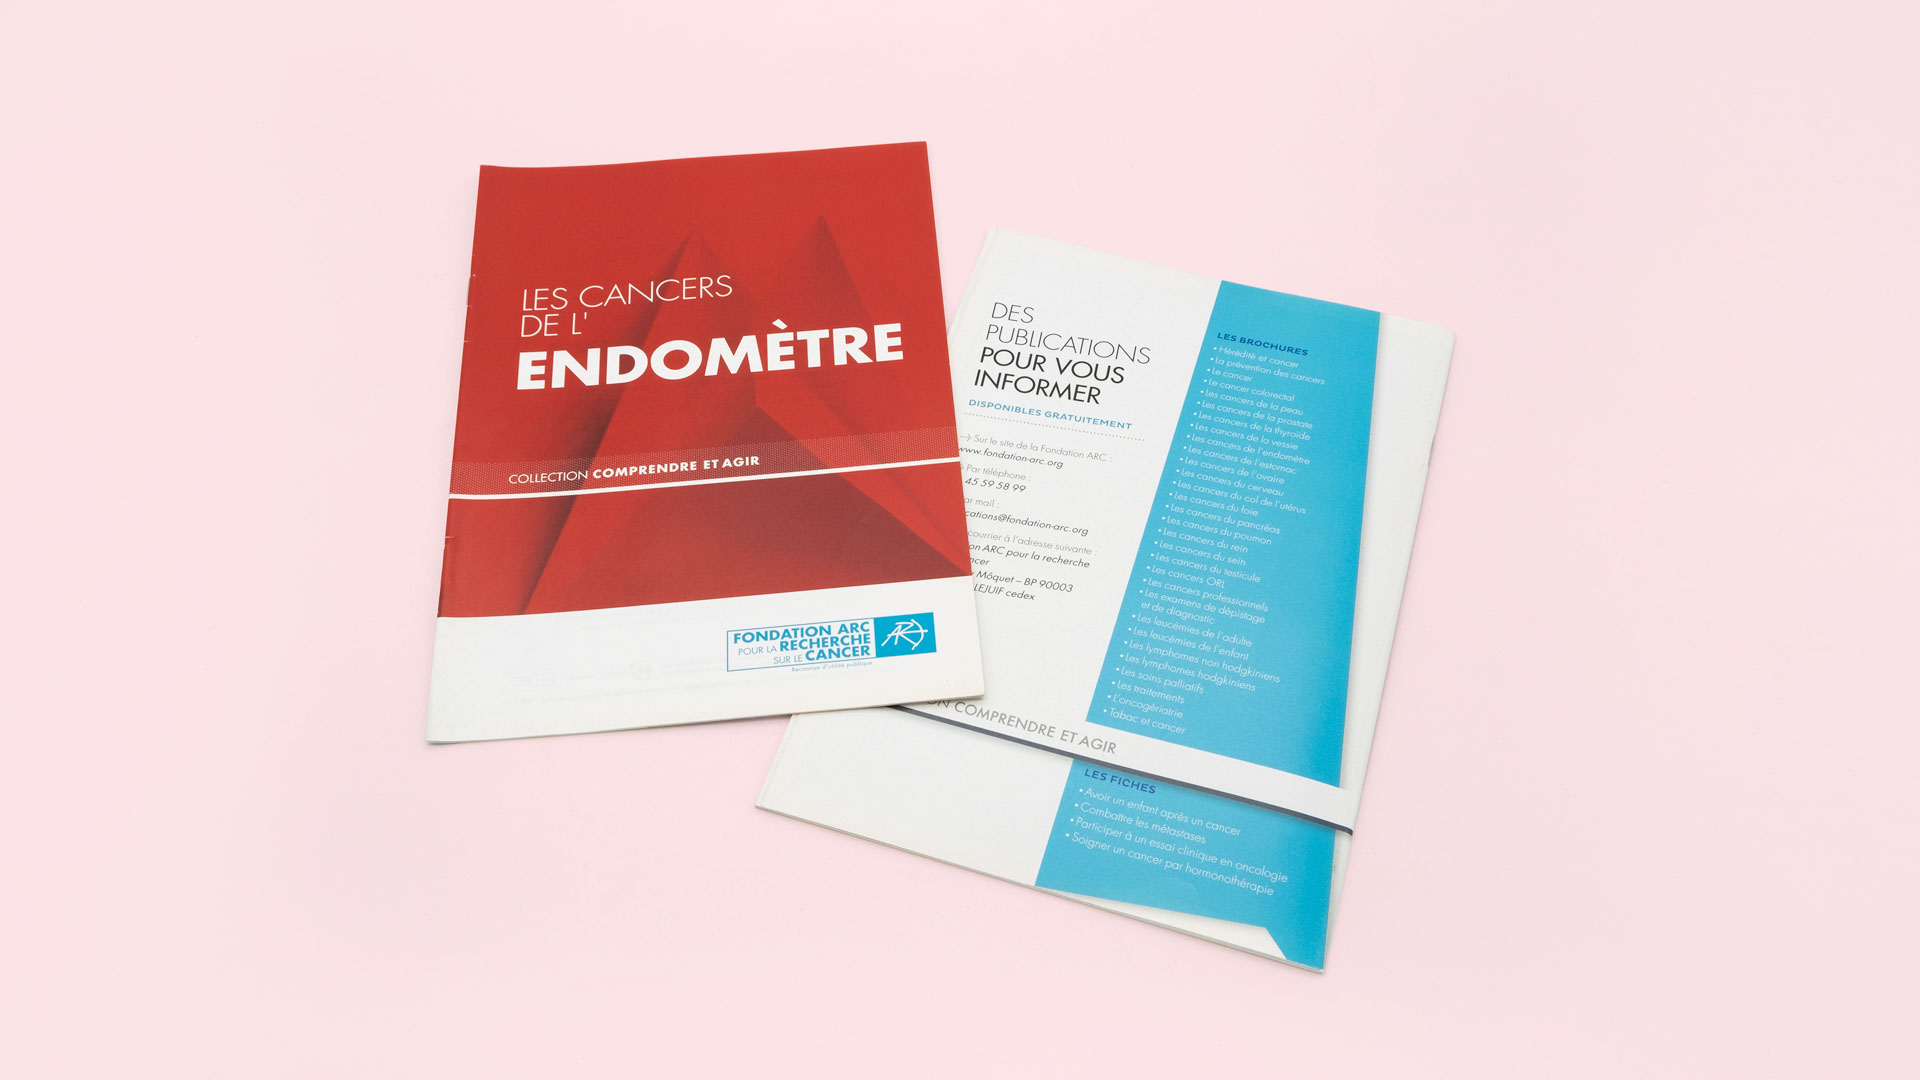 1ère et 4 ème de couverture de la brochure sur le cancer de l'endomètre.